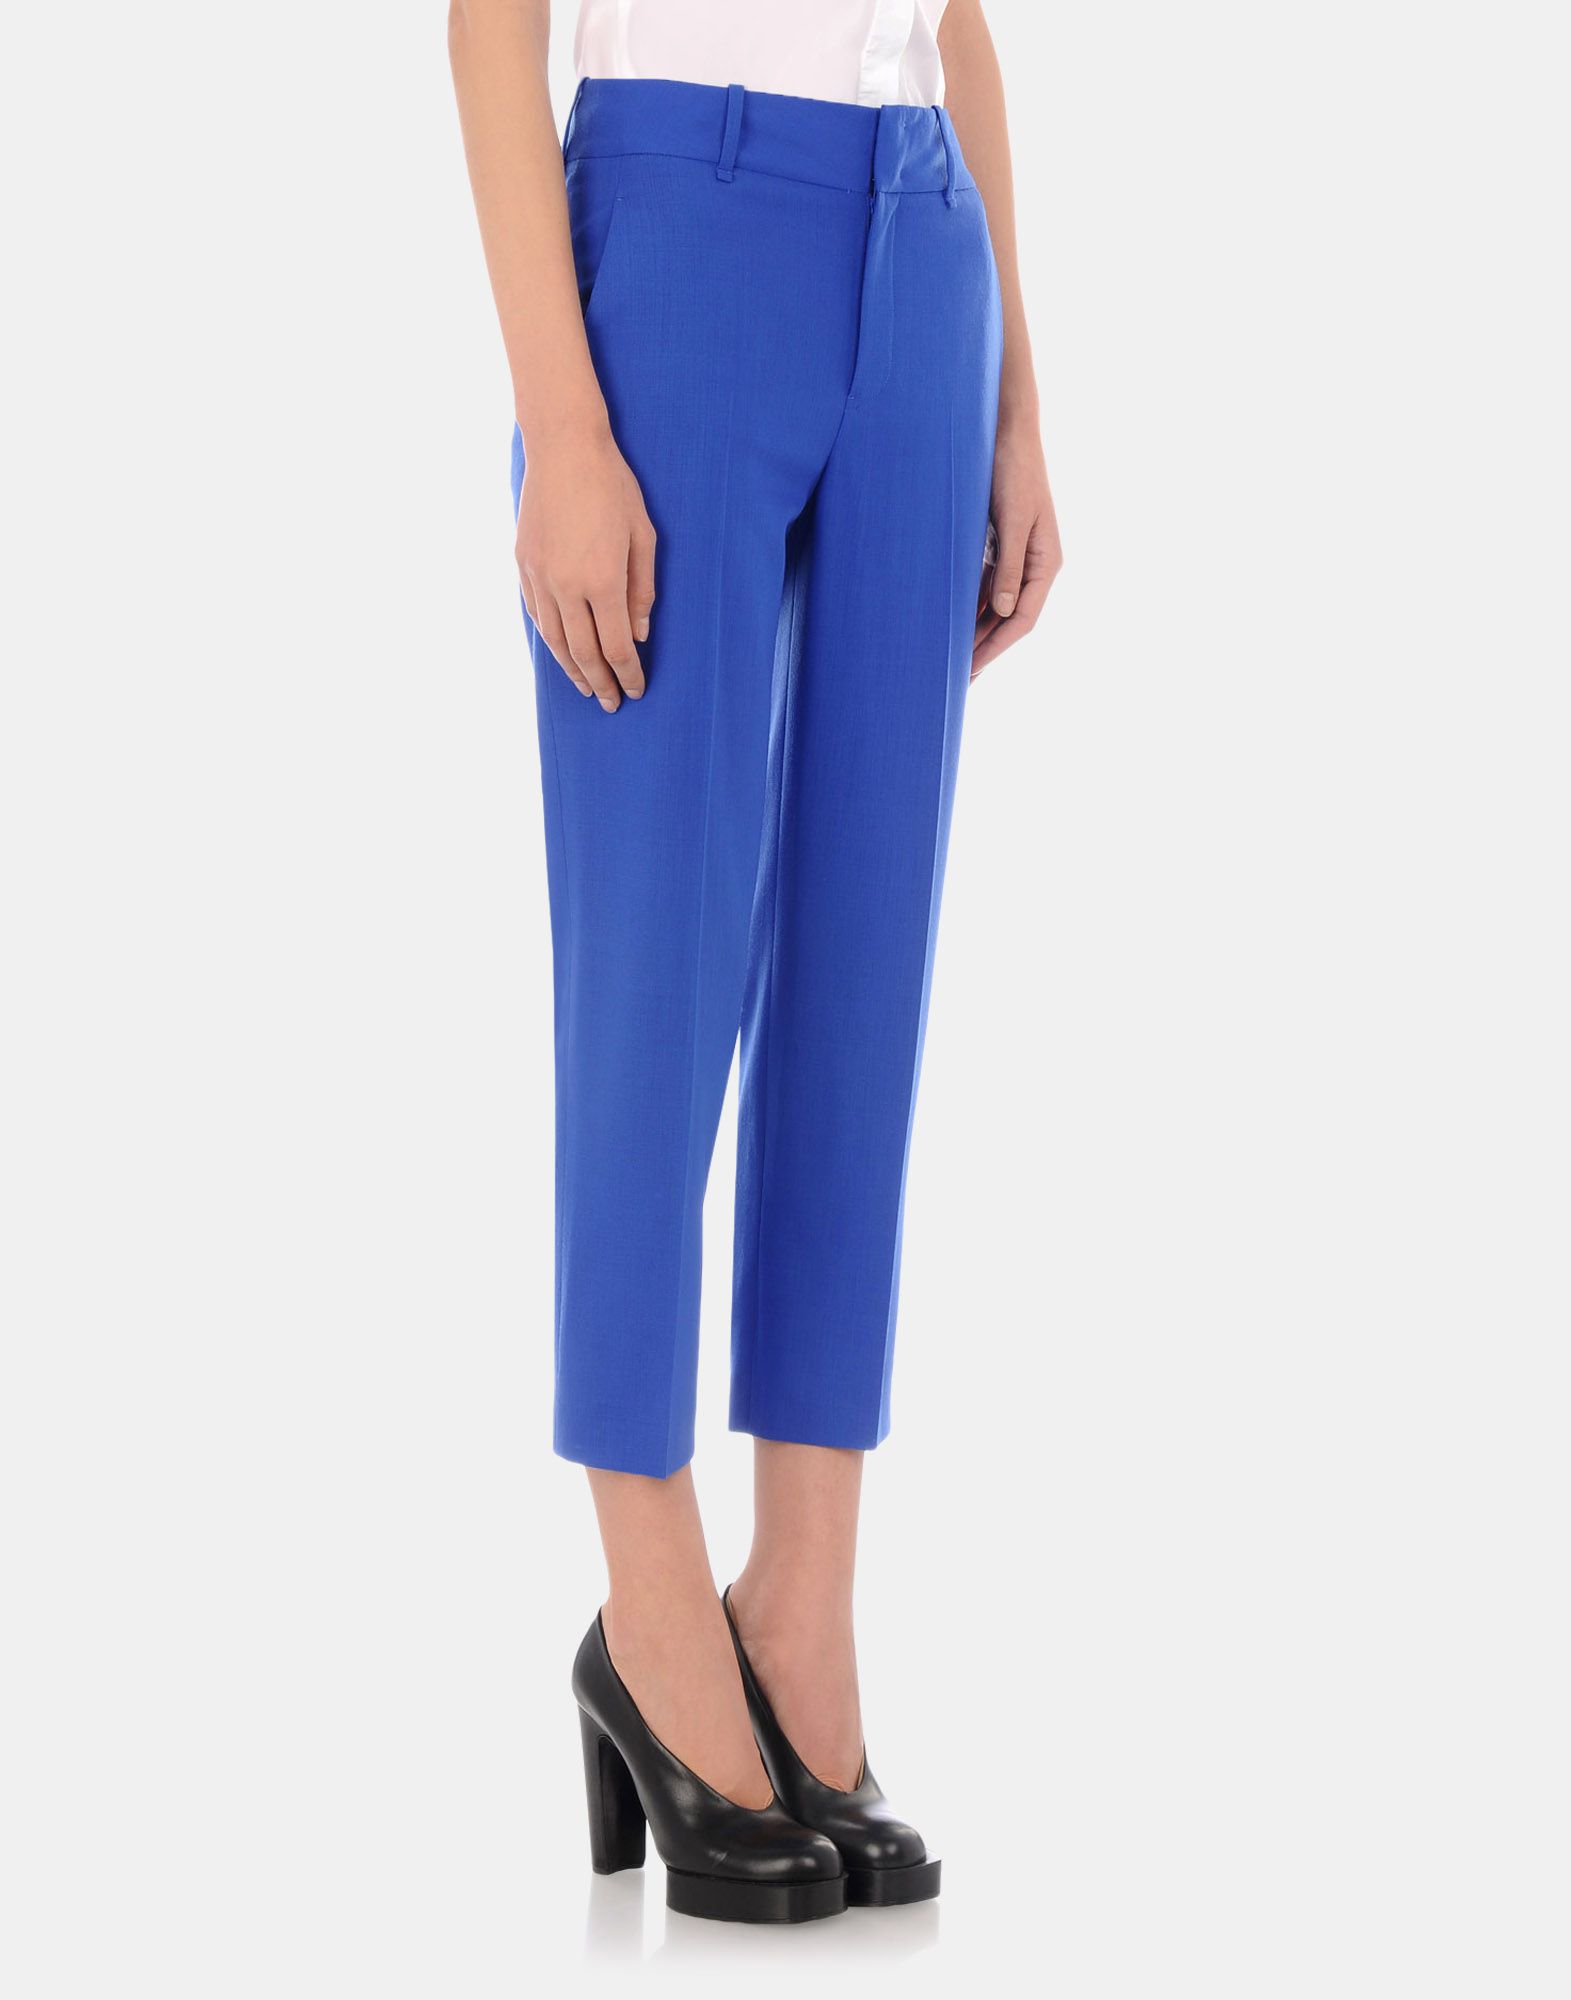 Cropped pants Women - Pants Women on Jil Sander Online Store